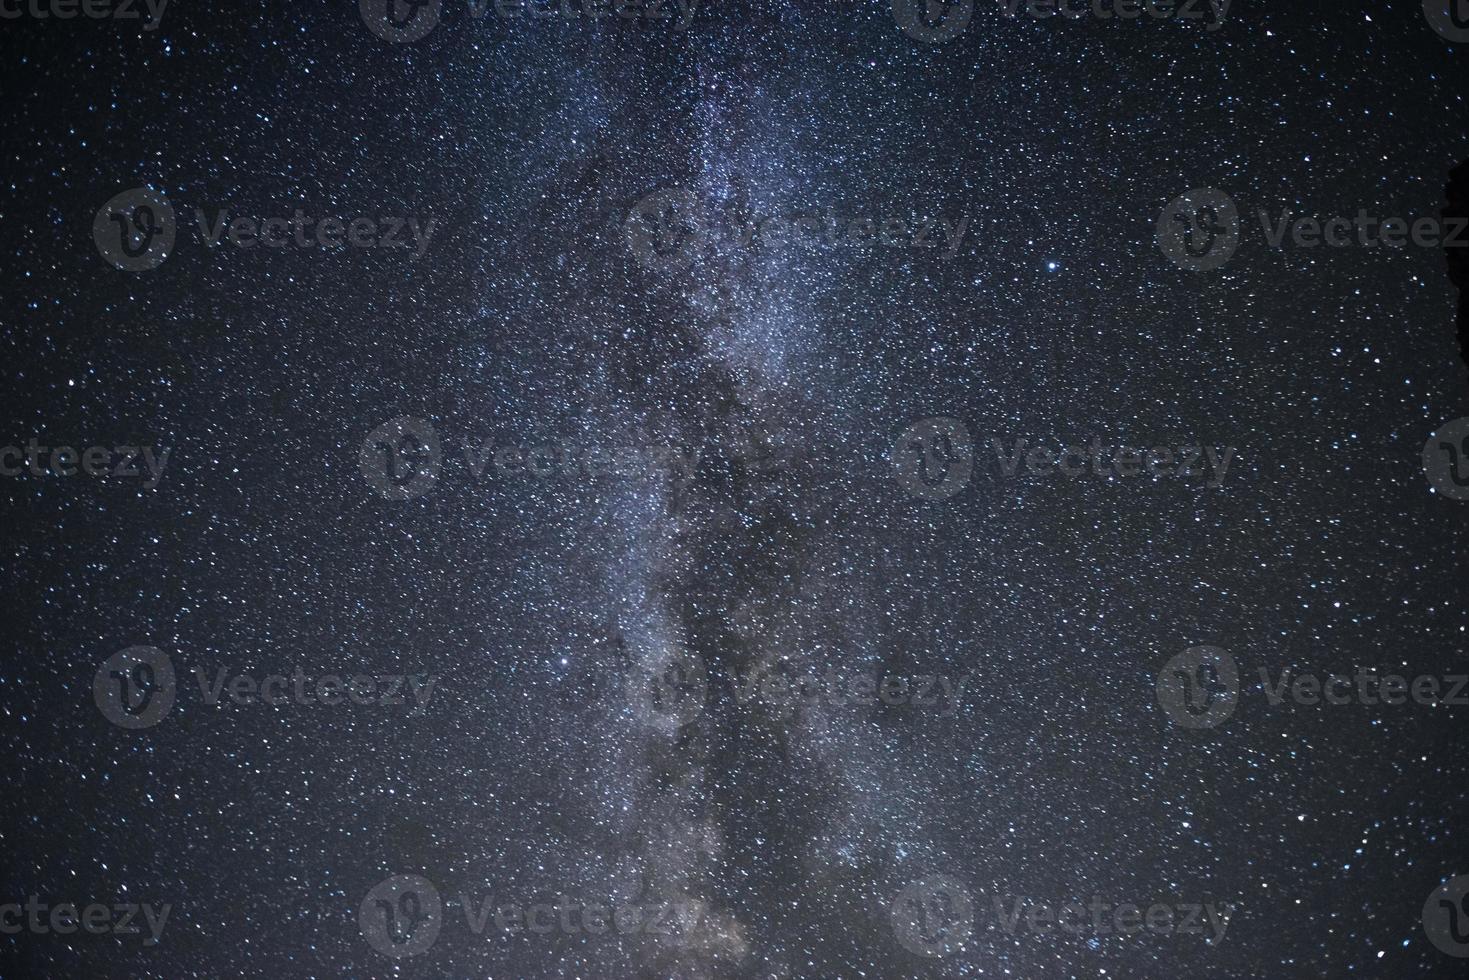 majestoso e lindo. galáxia da Via Láctea com estrelas e poeira espacial no universo. fotografado no céu noturno foto